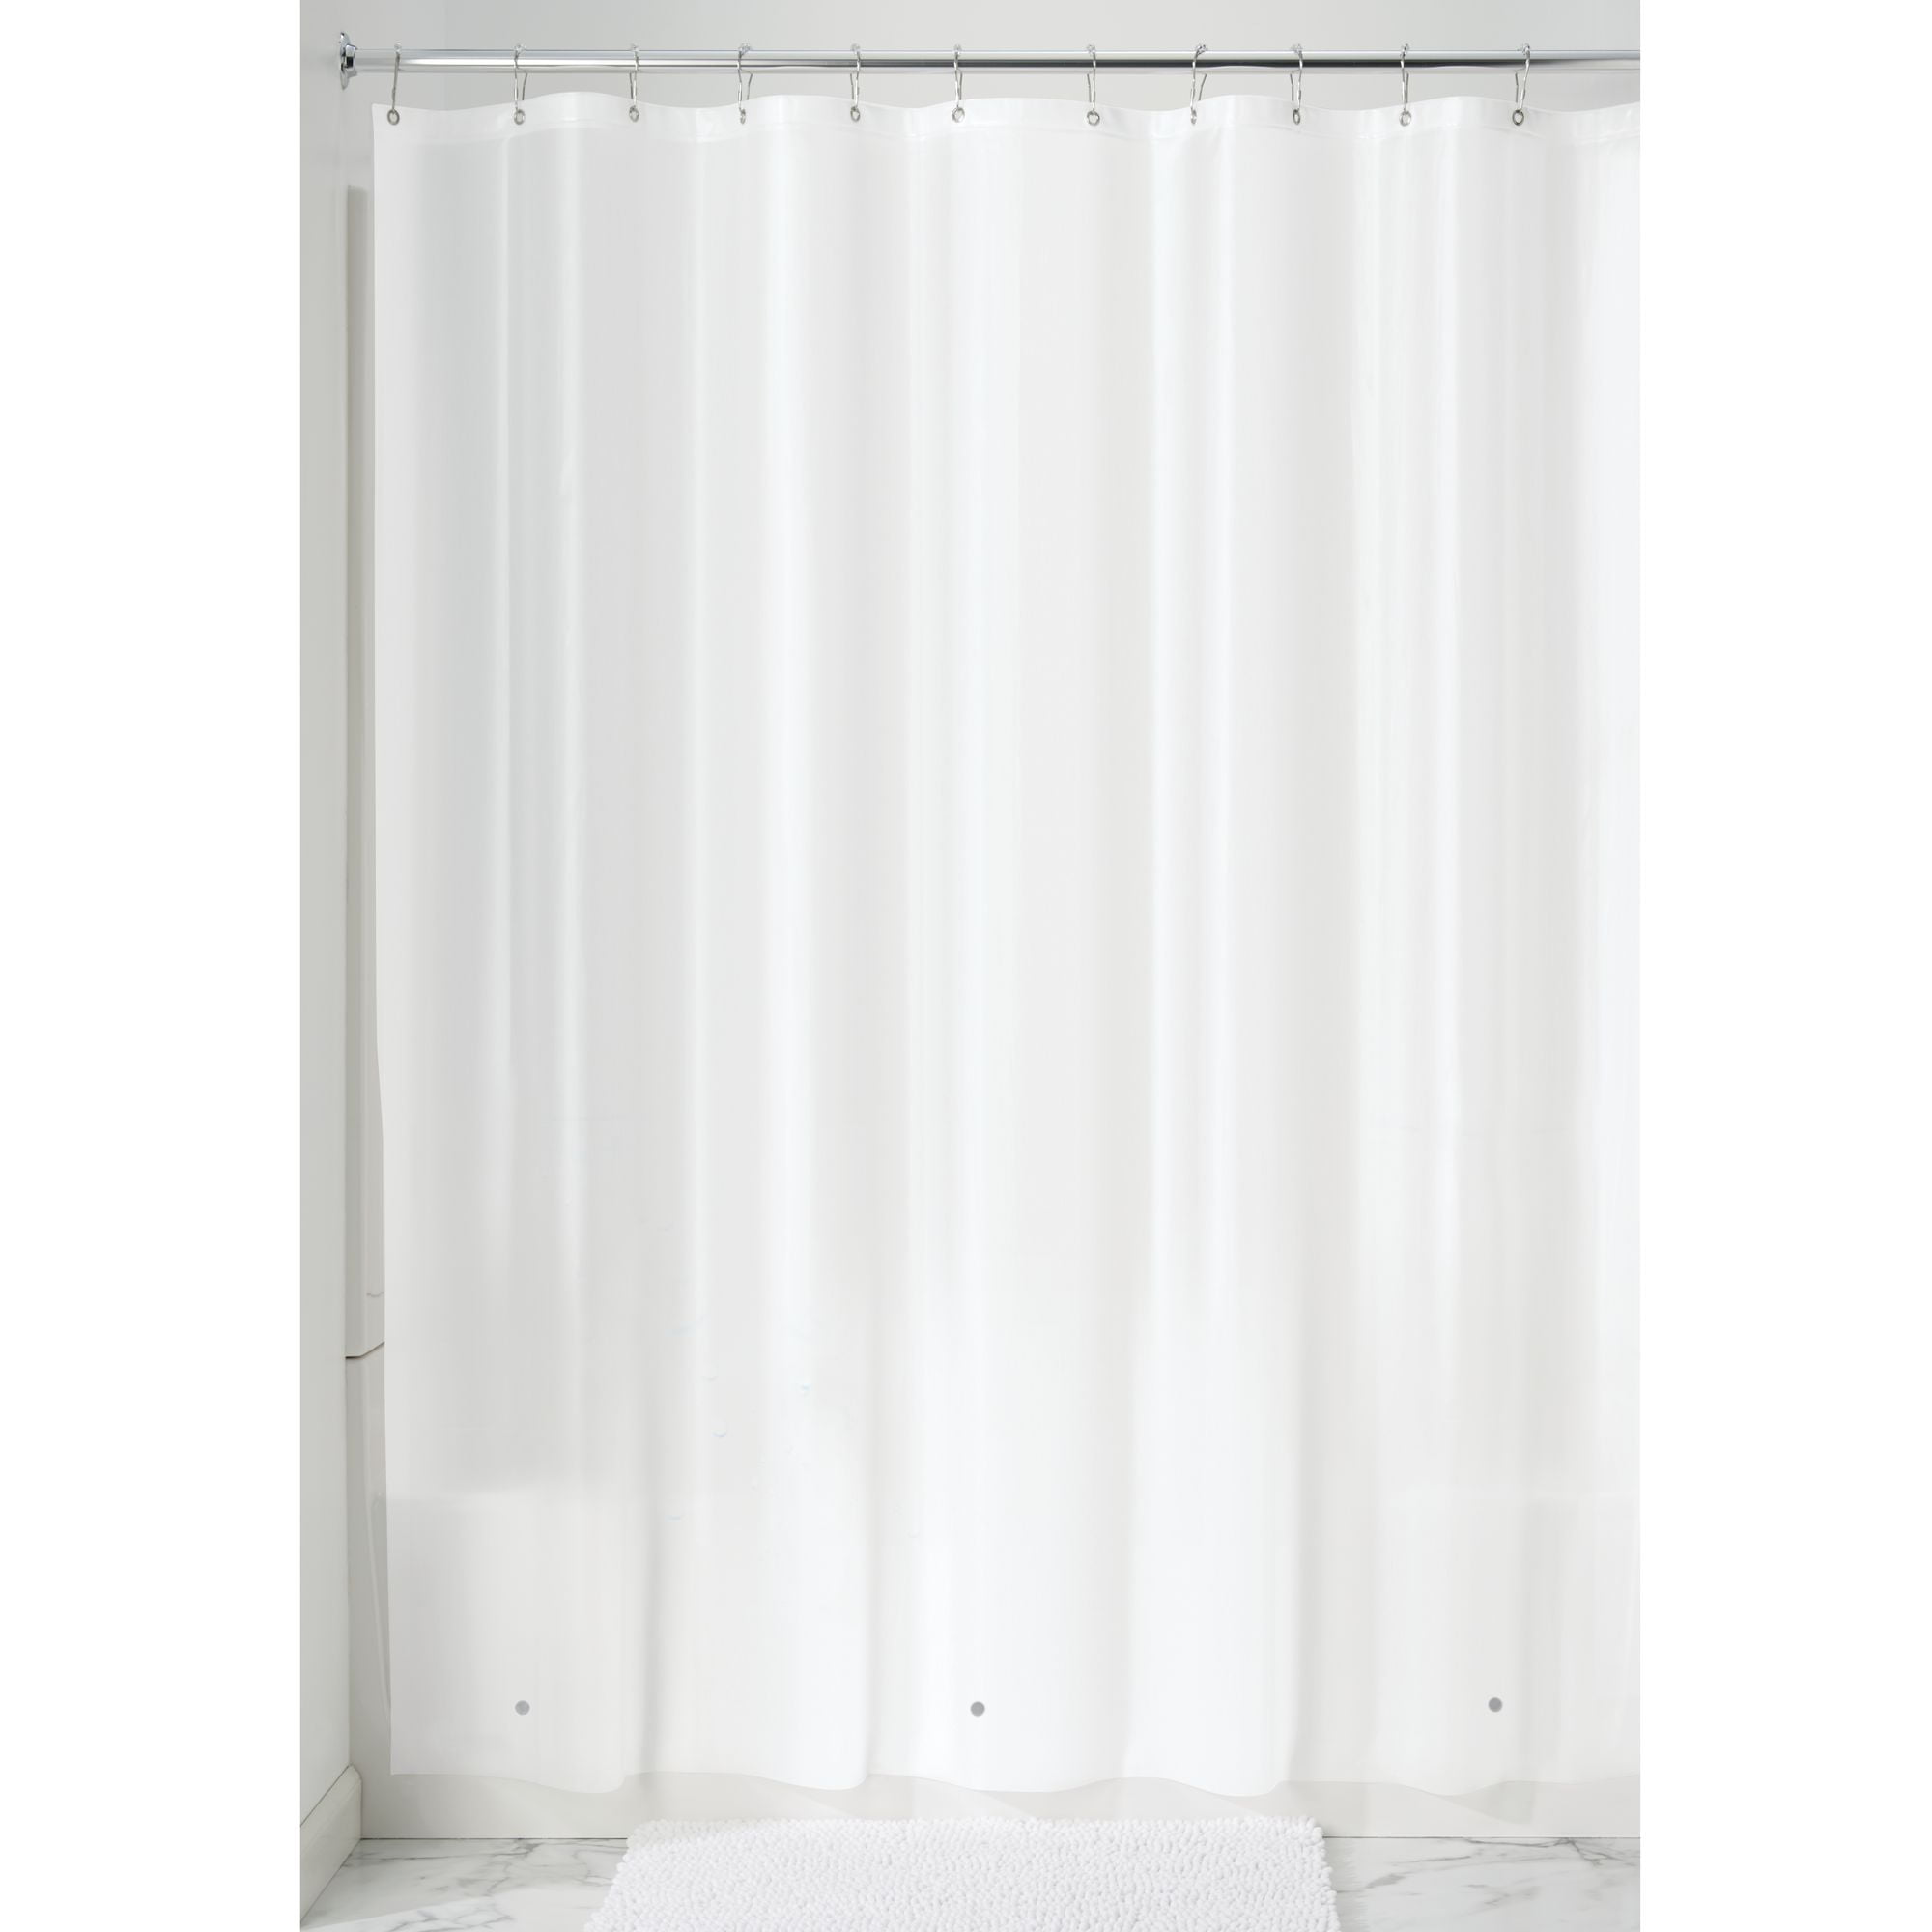 ang Vorhang PEVA data-mtsrclang=en-US href=# onclick=return false; 							show original title Details about   Shower Curtain 180x200cm 180x180cm Anti Mold Bath Curtain Curtain PEVA 